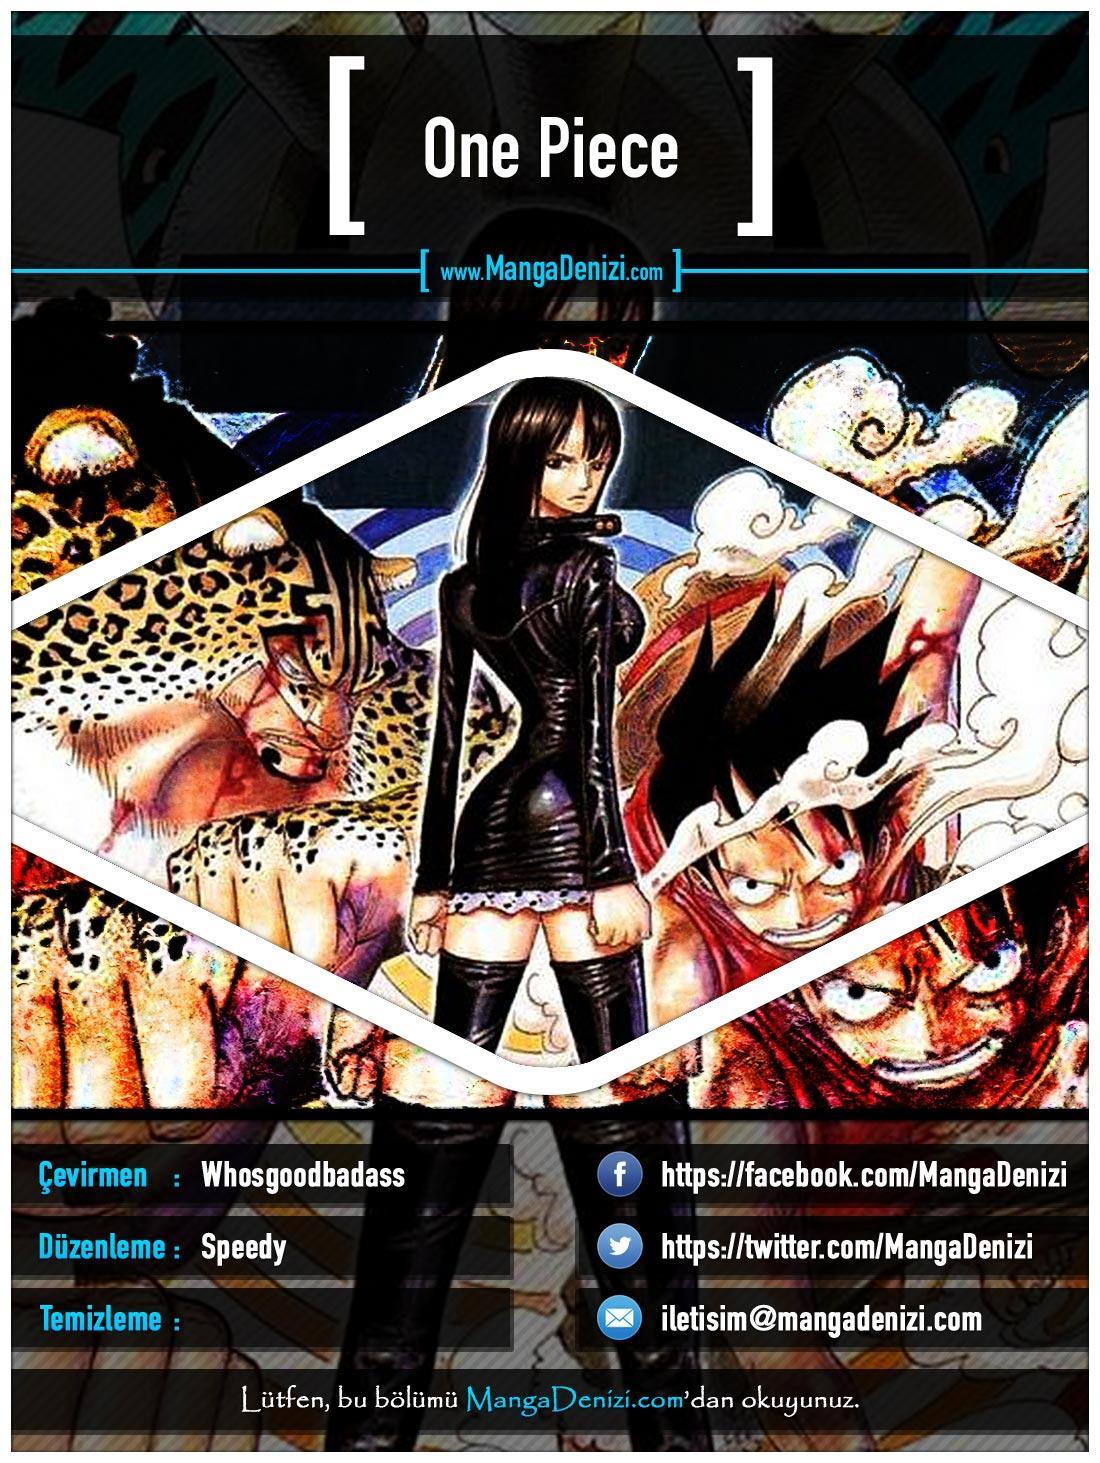 One Piece [Renkli] mangasının 0401 bölümünün 1. sayfasını okuyorsunuz.